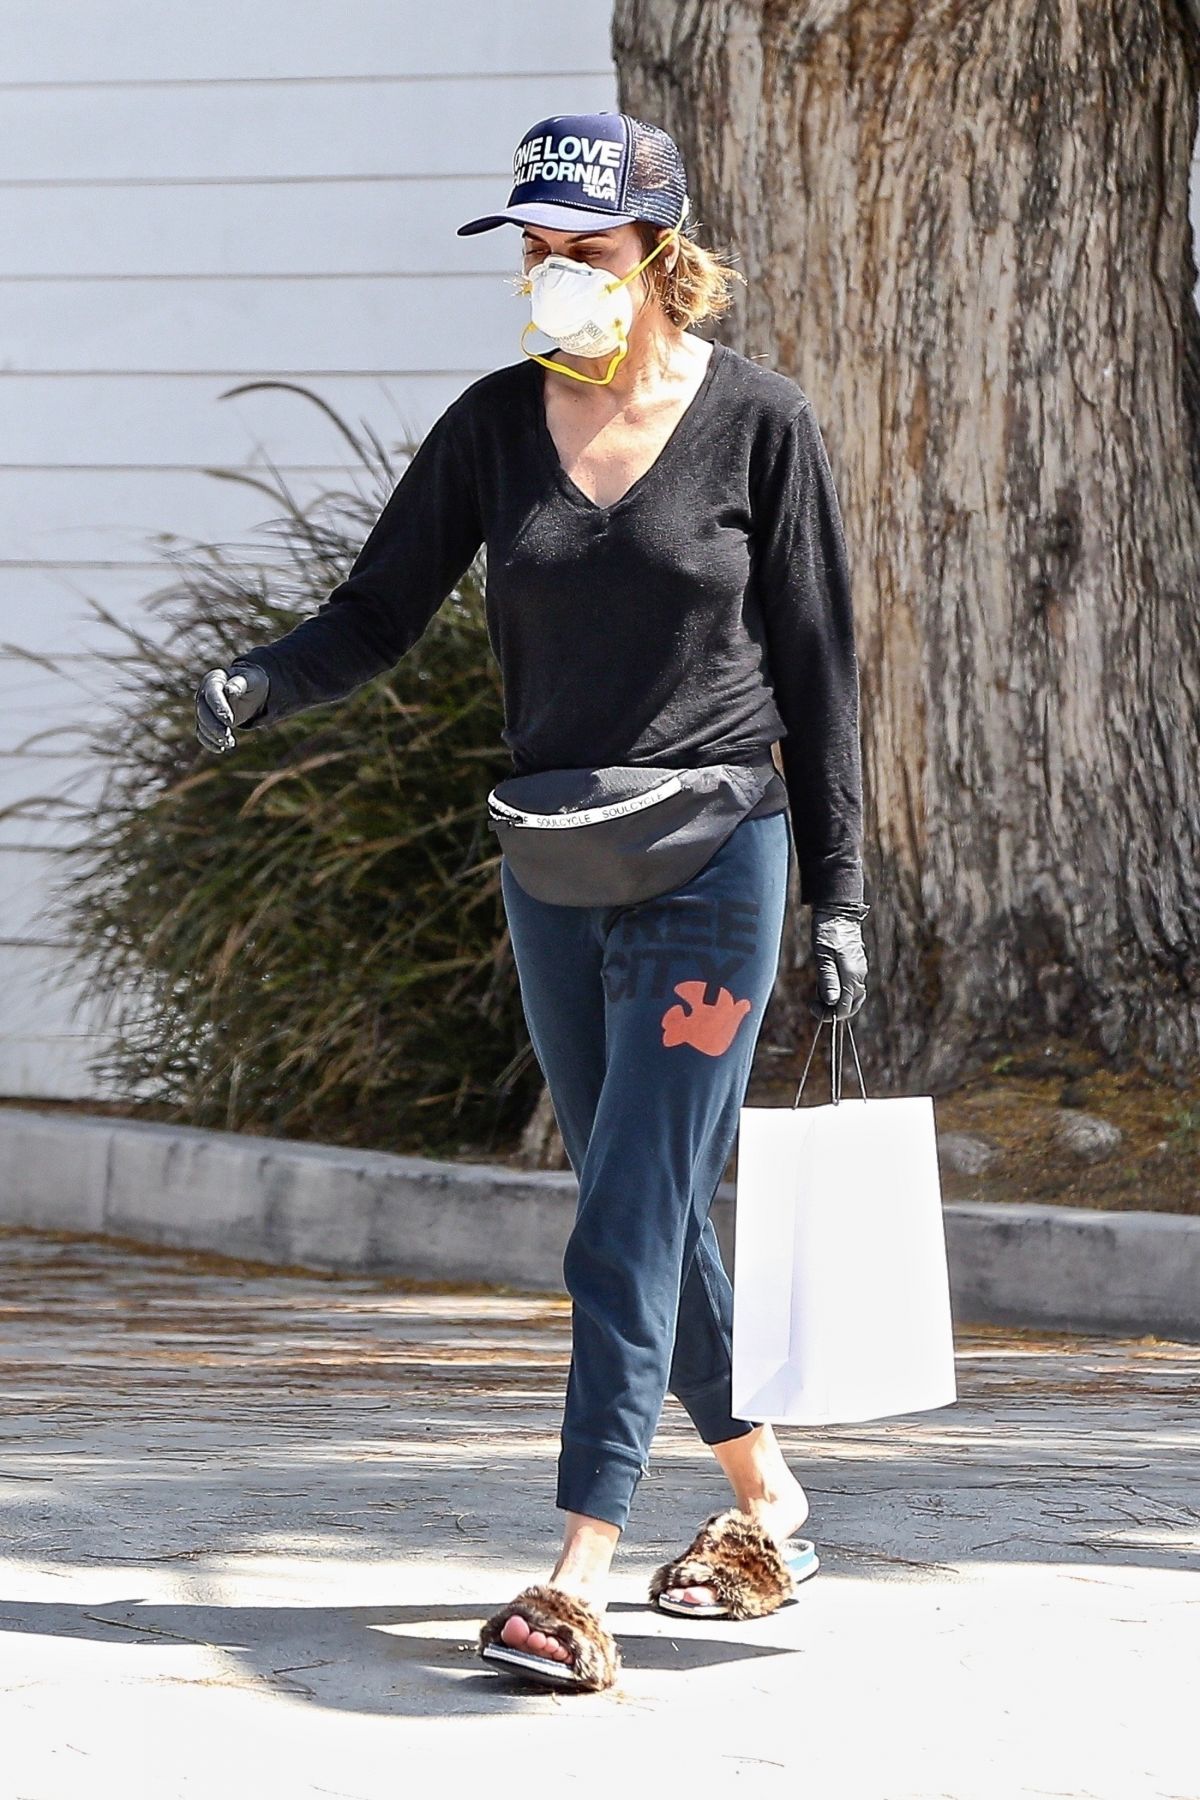 LISA RINNA Wearing Mask at Pressed Juicery in Los Angeles 04/30/2020 ...